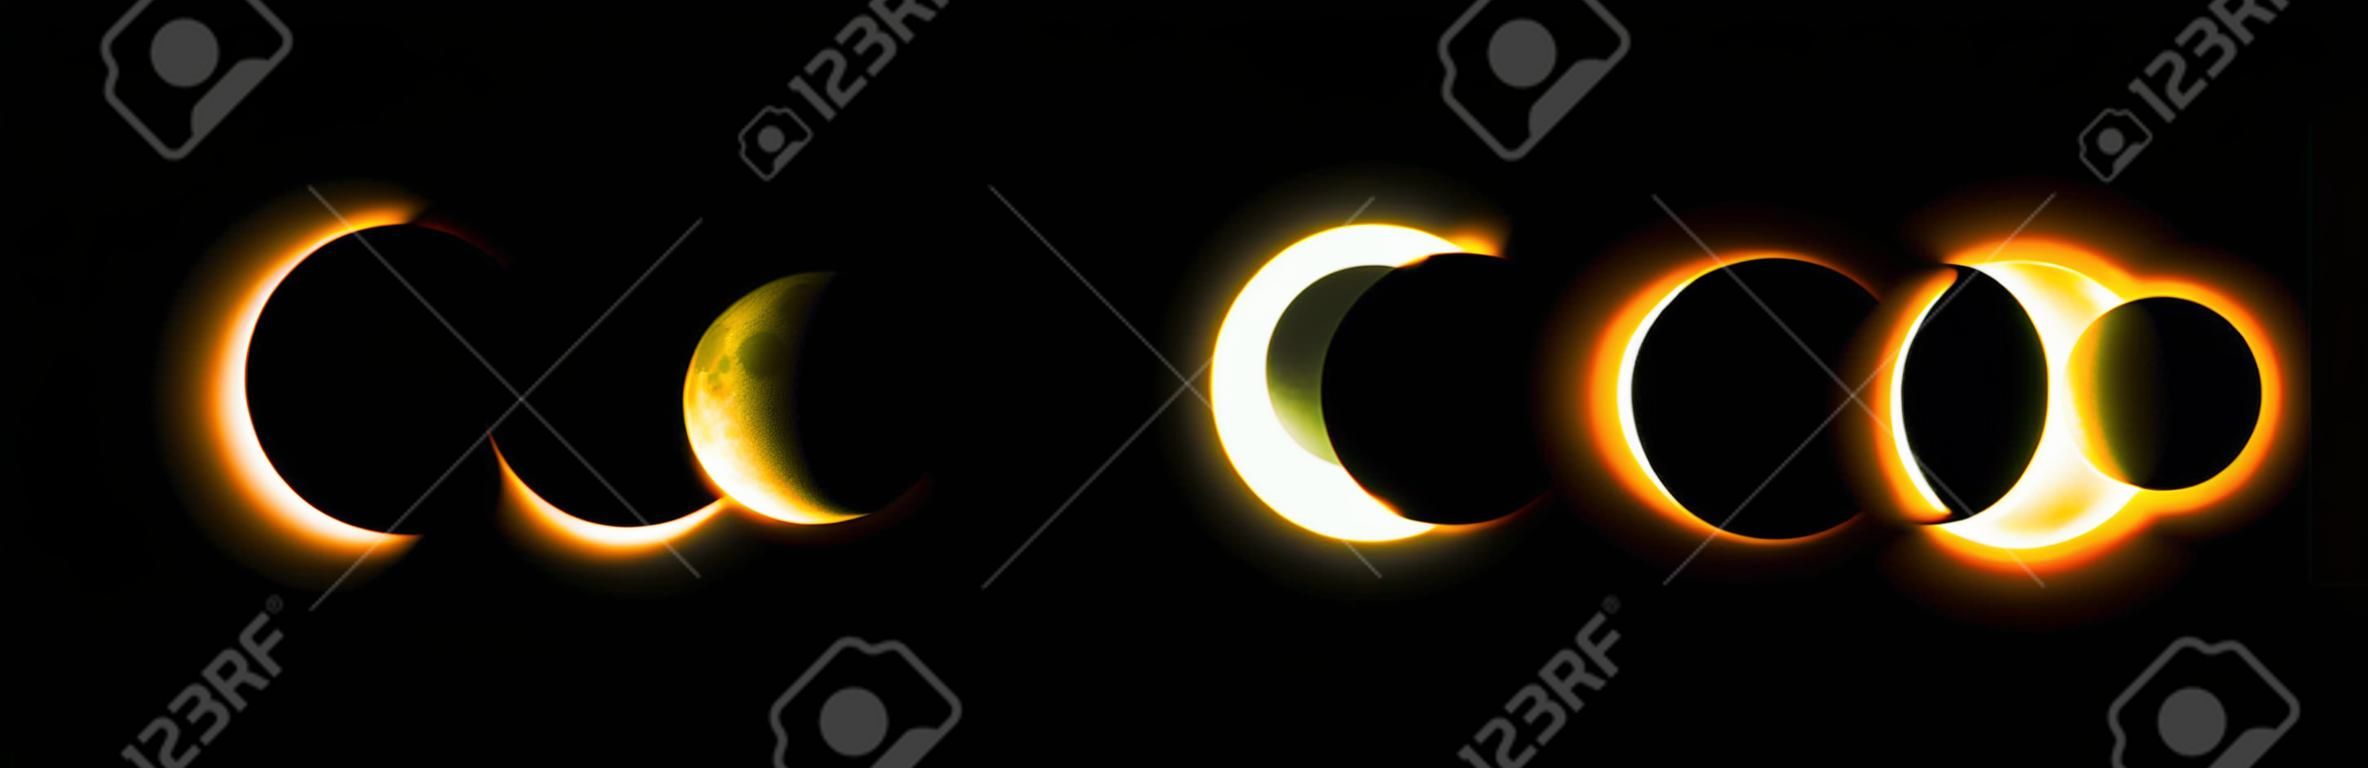 Diferentes fases de eclipse solar y lunar. Vector.